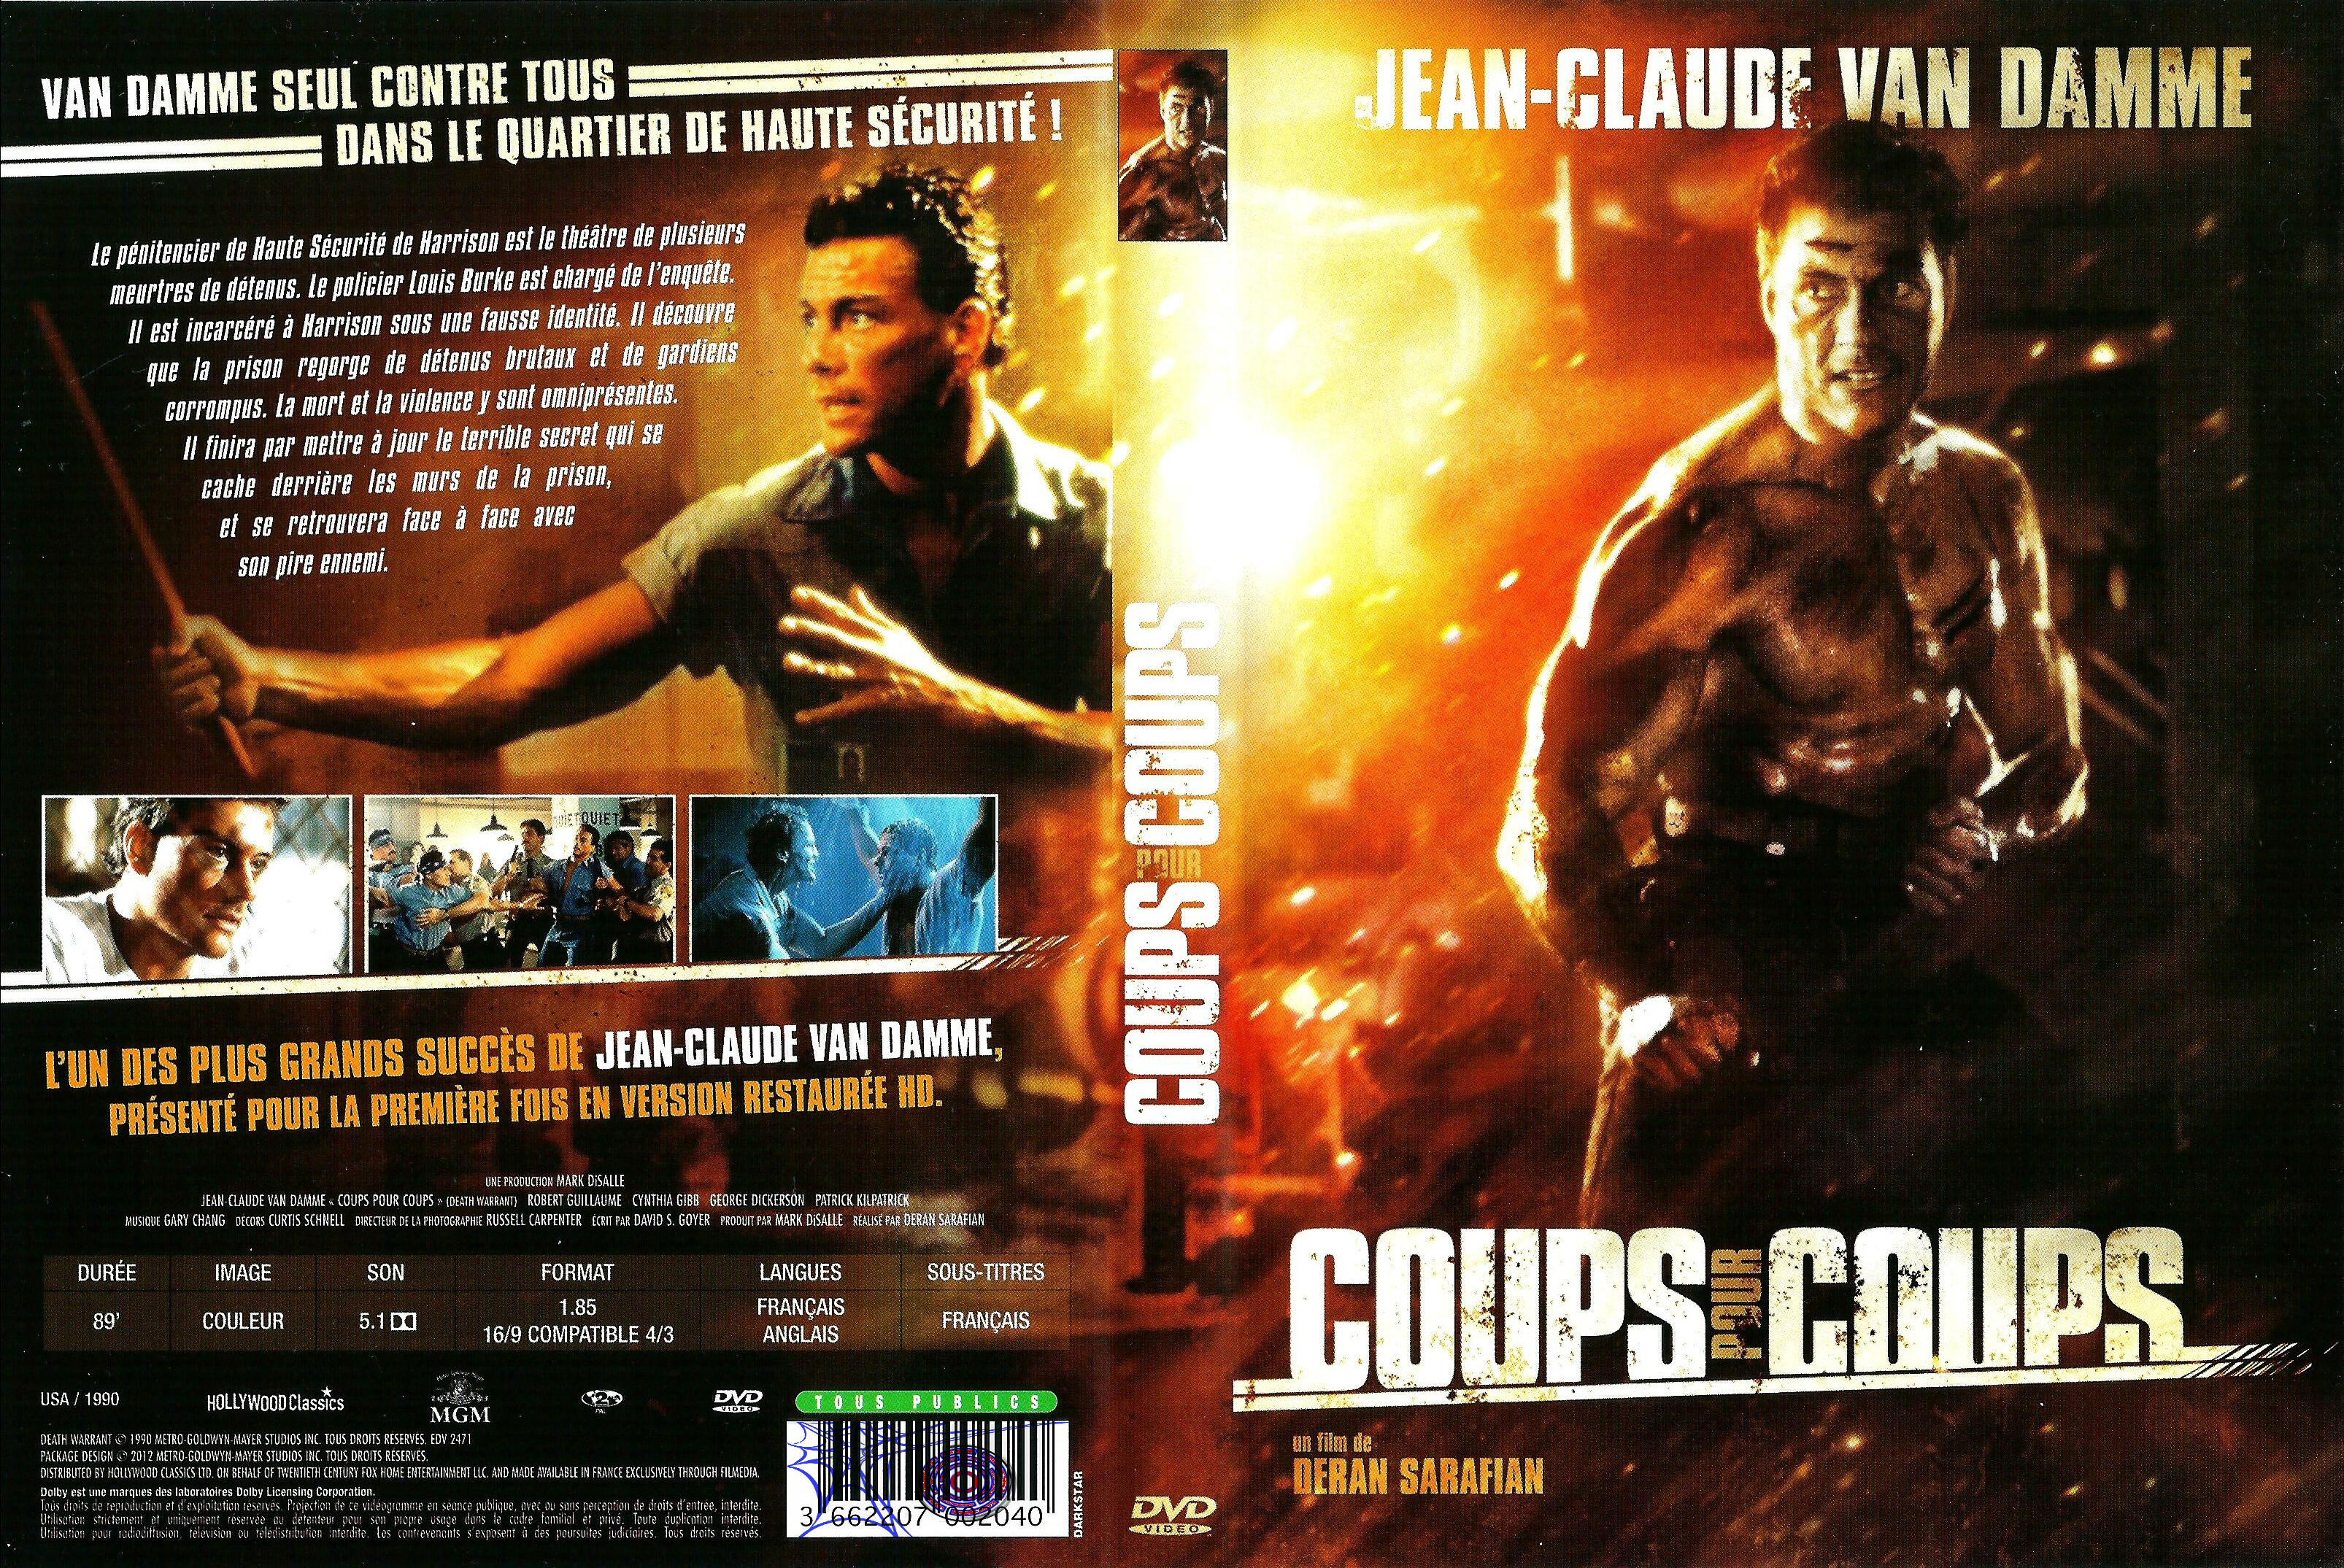 Jaquette DVD Coups pour coups v3